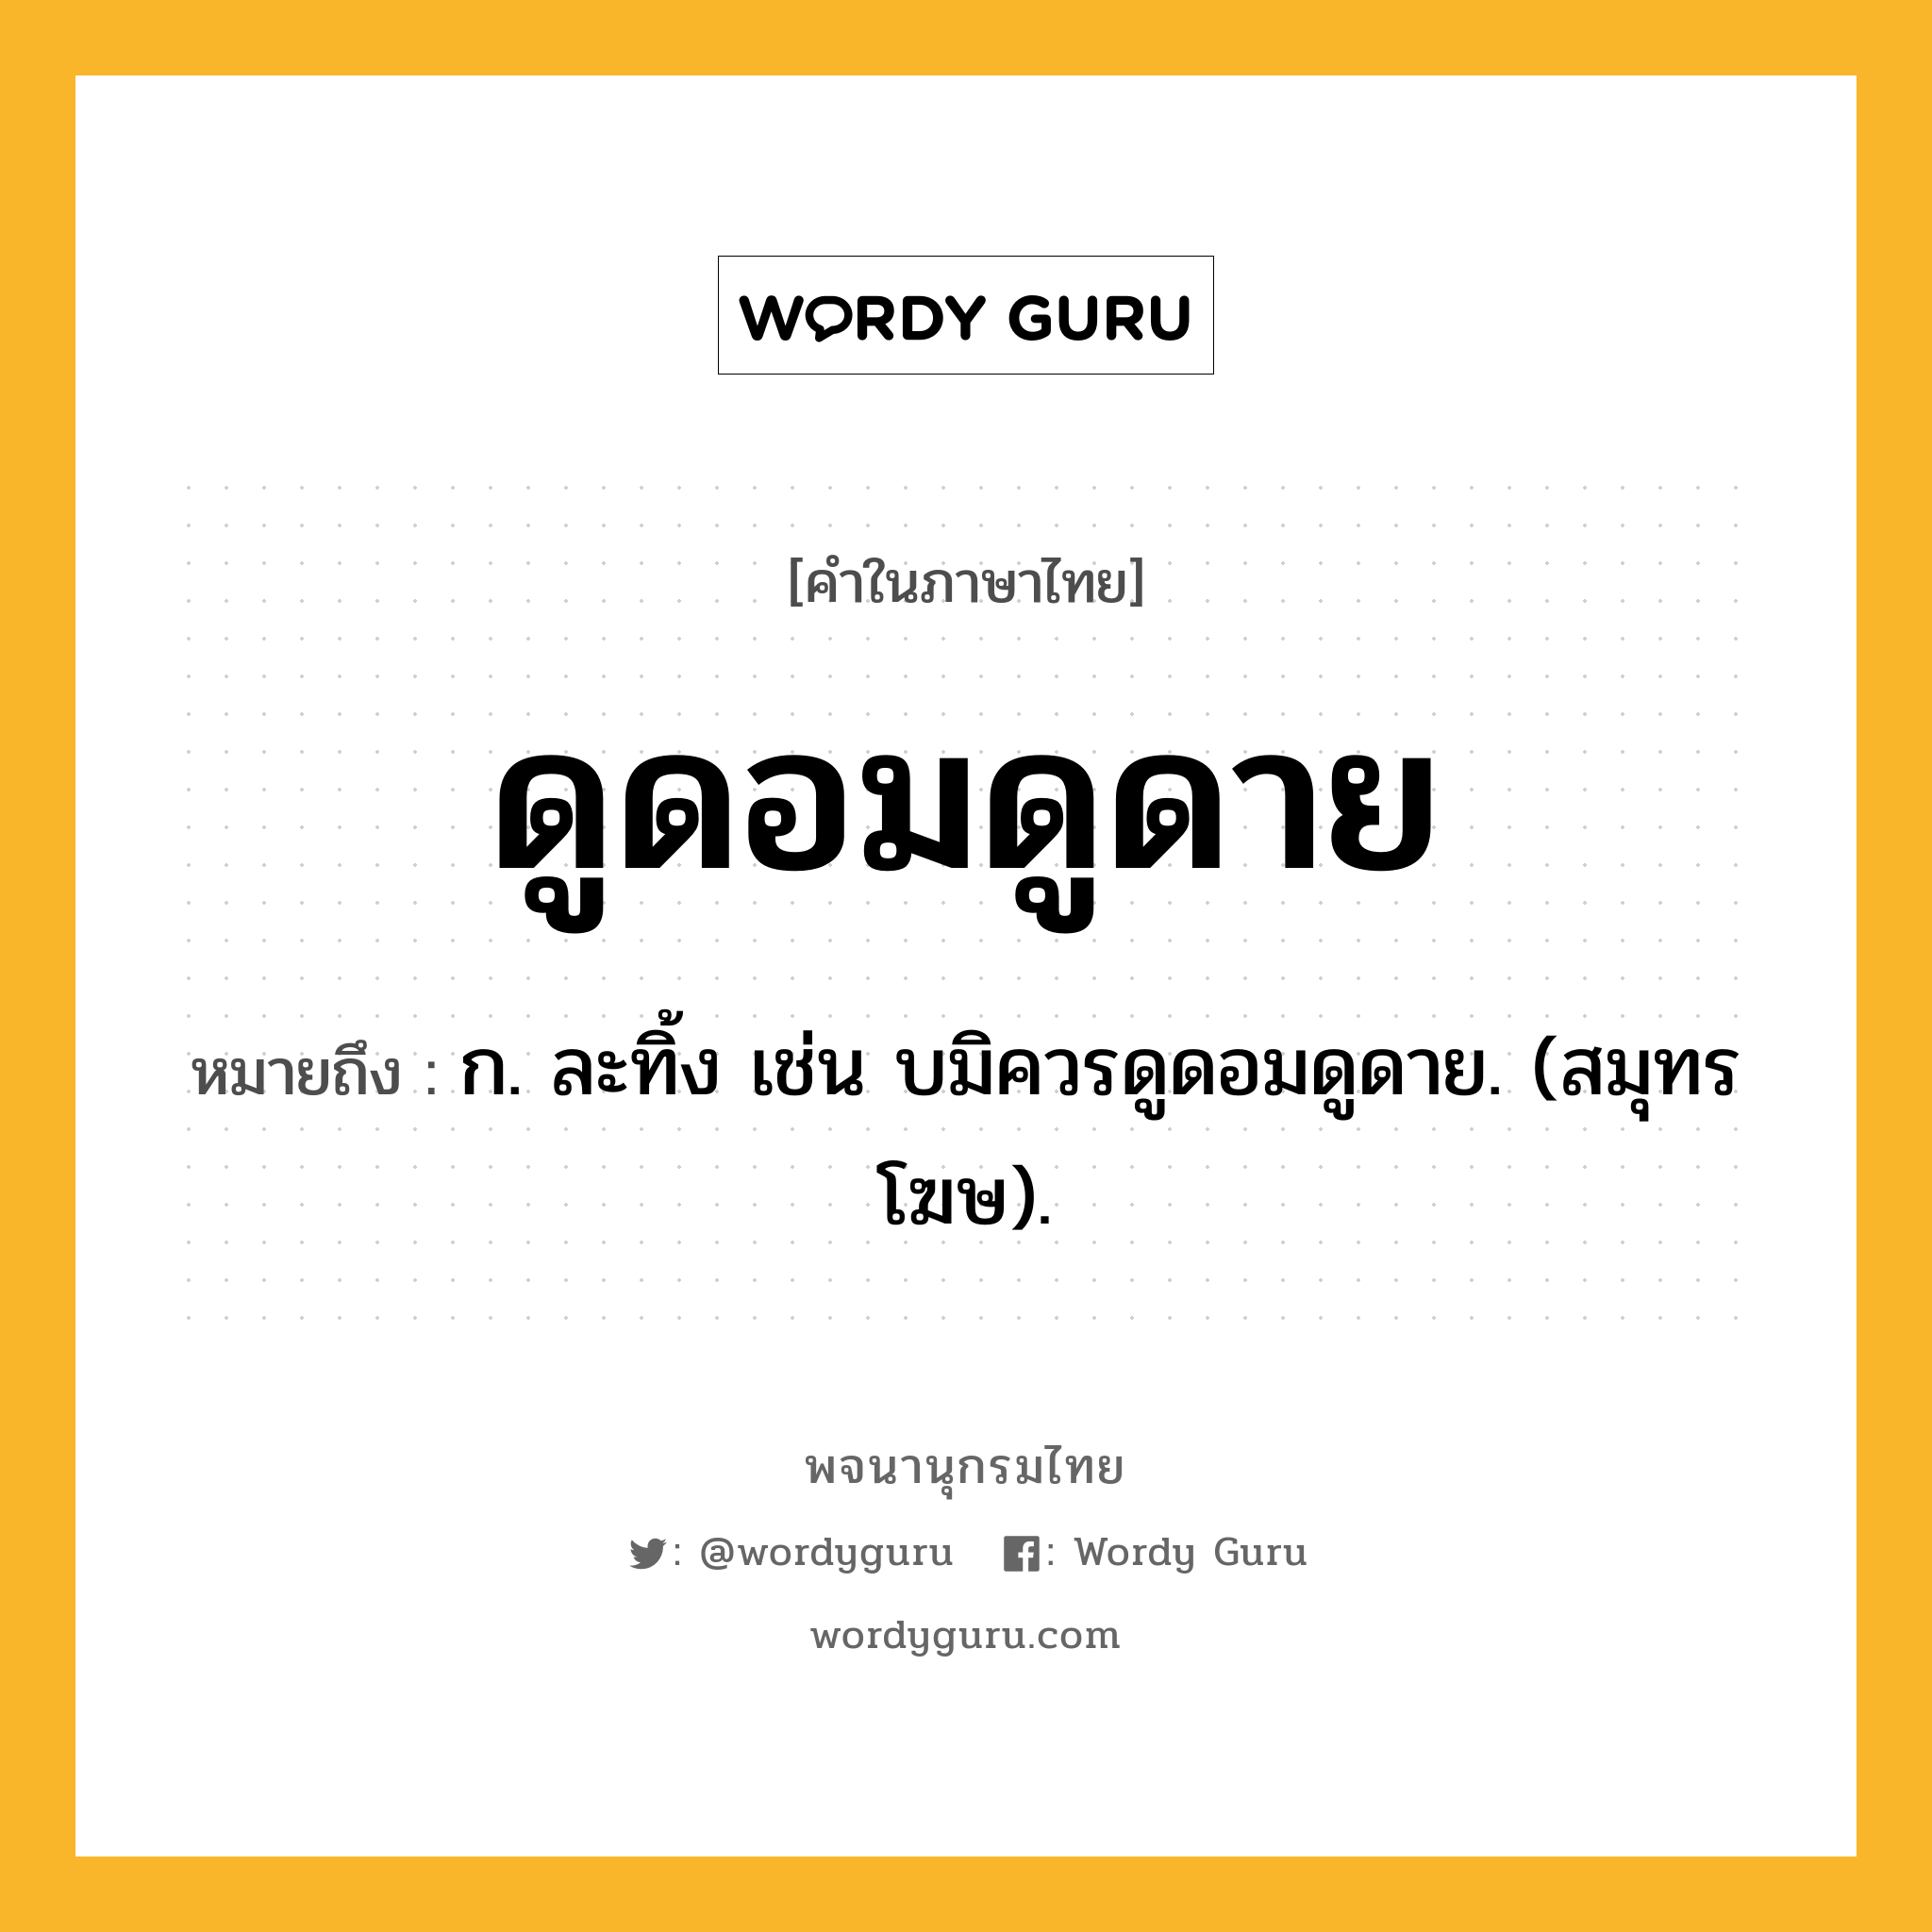 ดูดอมดูดาย ความหมาย หมายถึงอะไร?, คำในภาษาไทย ดูดอมดูดาย หมายถึง ก. ละทิ้ง เช่น บมิควรดูดอมดูดาย. (สมุทรโฆษ).